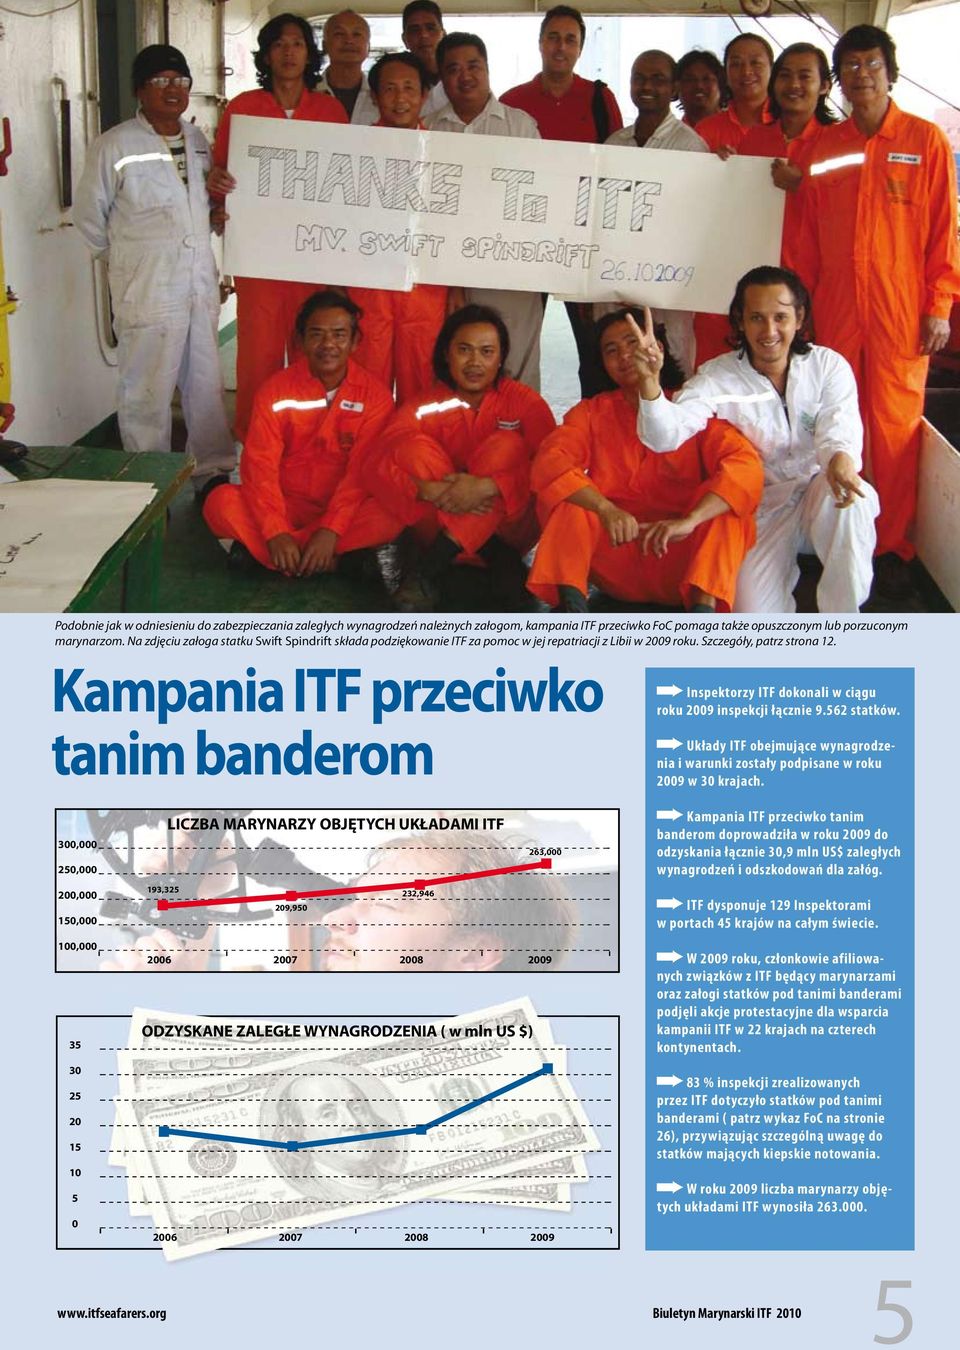 Kampania ITF przeciwko tanim banderom Inspektorzy ITF dokonali w ciągu roku 2009 inspekcji łącznie 9.562 statków.